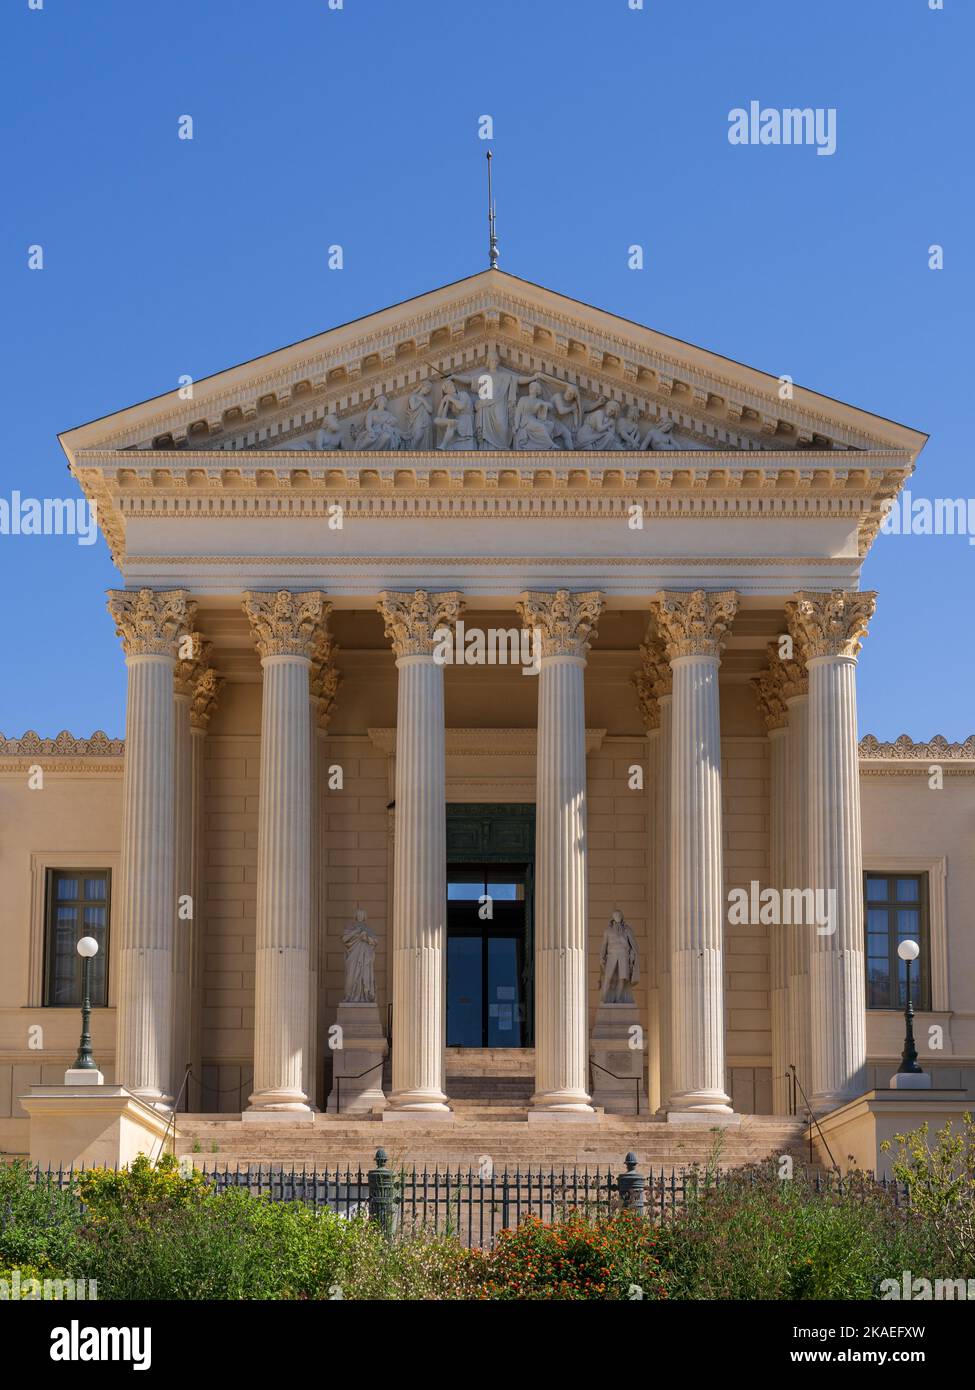 Vertikale Ansicht der neoklassizistischen Steinfassade mit Säulen und Giebel, die die Justiz des historischen Gerichtsgebäudes darstellen, Wahrzeichen von Montpellier, Frankreich Stockfoto